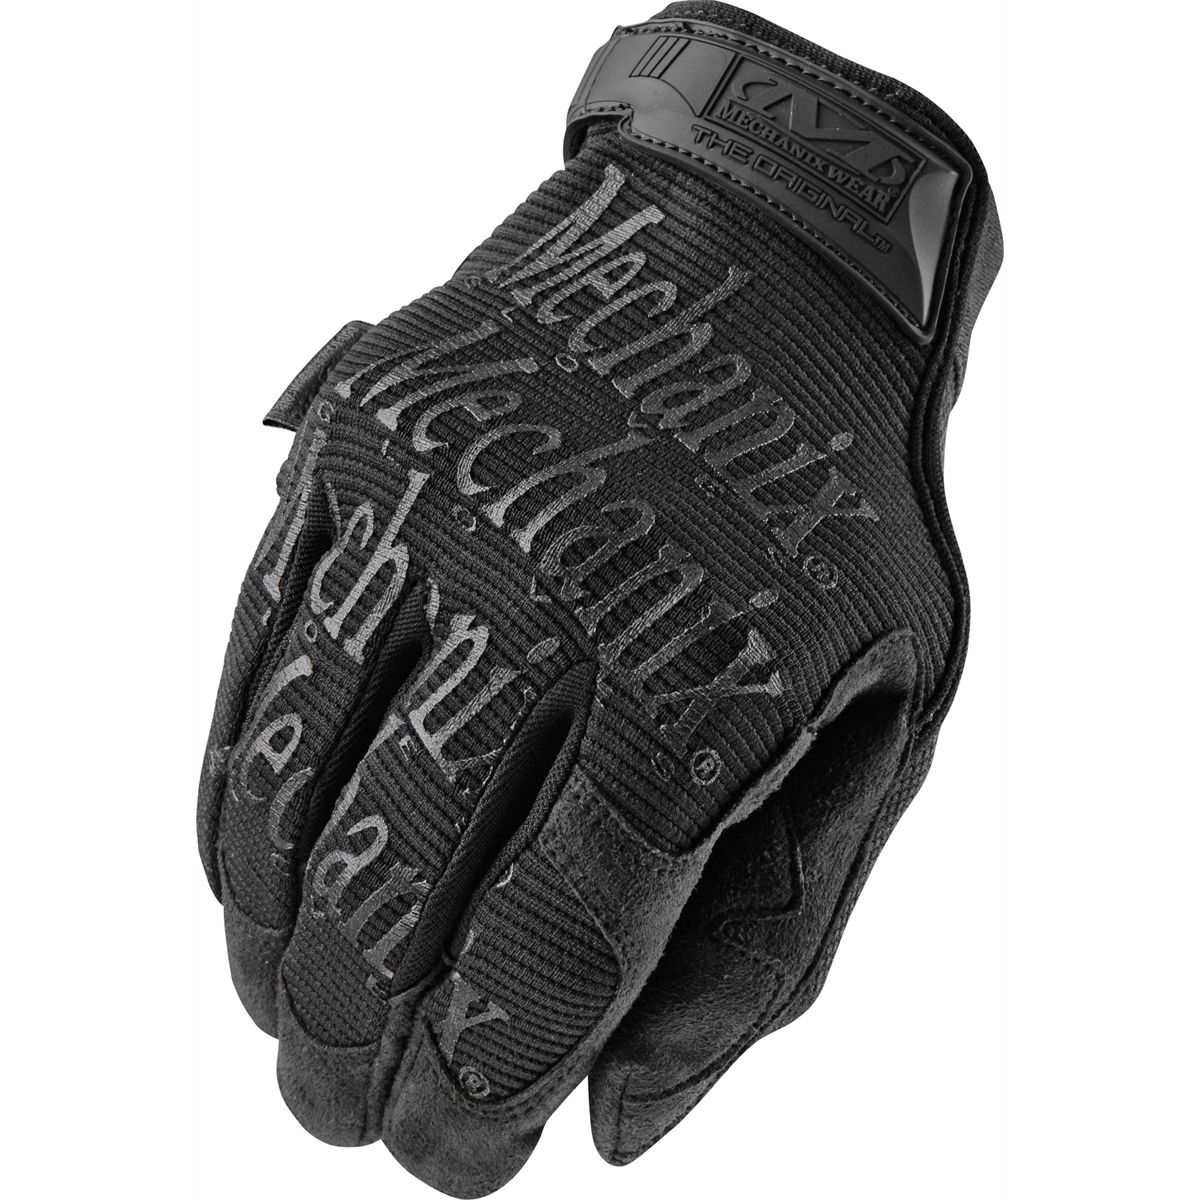 Original Glove - Stealth - M